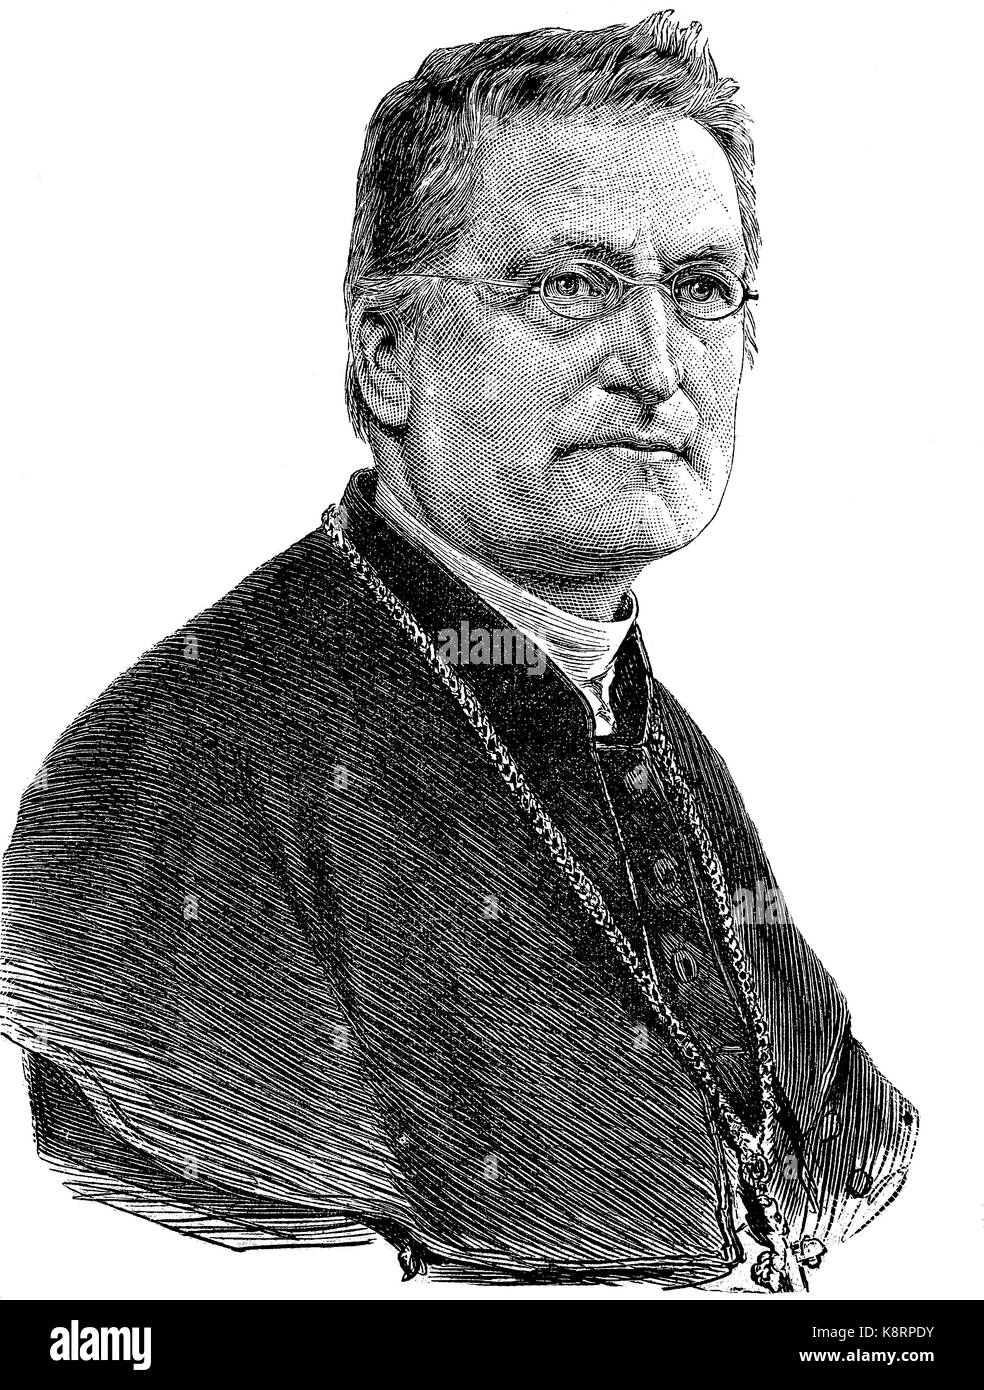 Johannes Christian Roos, 1826 - 1896, un tedesco cattolico romano ecclesiastico. Egli fu Vescovo di Limburg, Germania, digitale Riproduzione migliorata di una xilografia, pubblicata nel XIX secolo Foto Stock